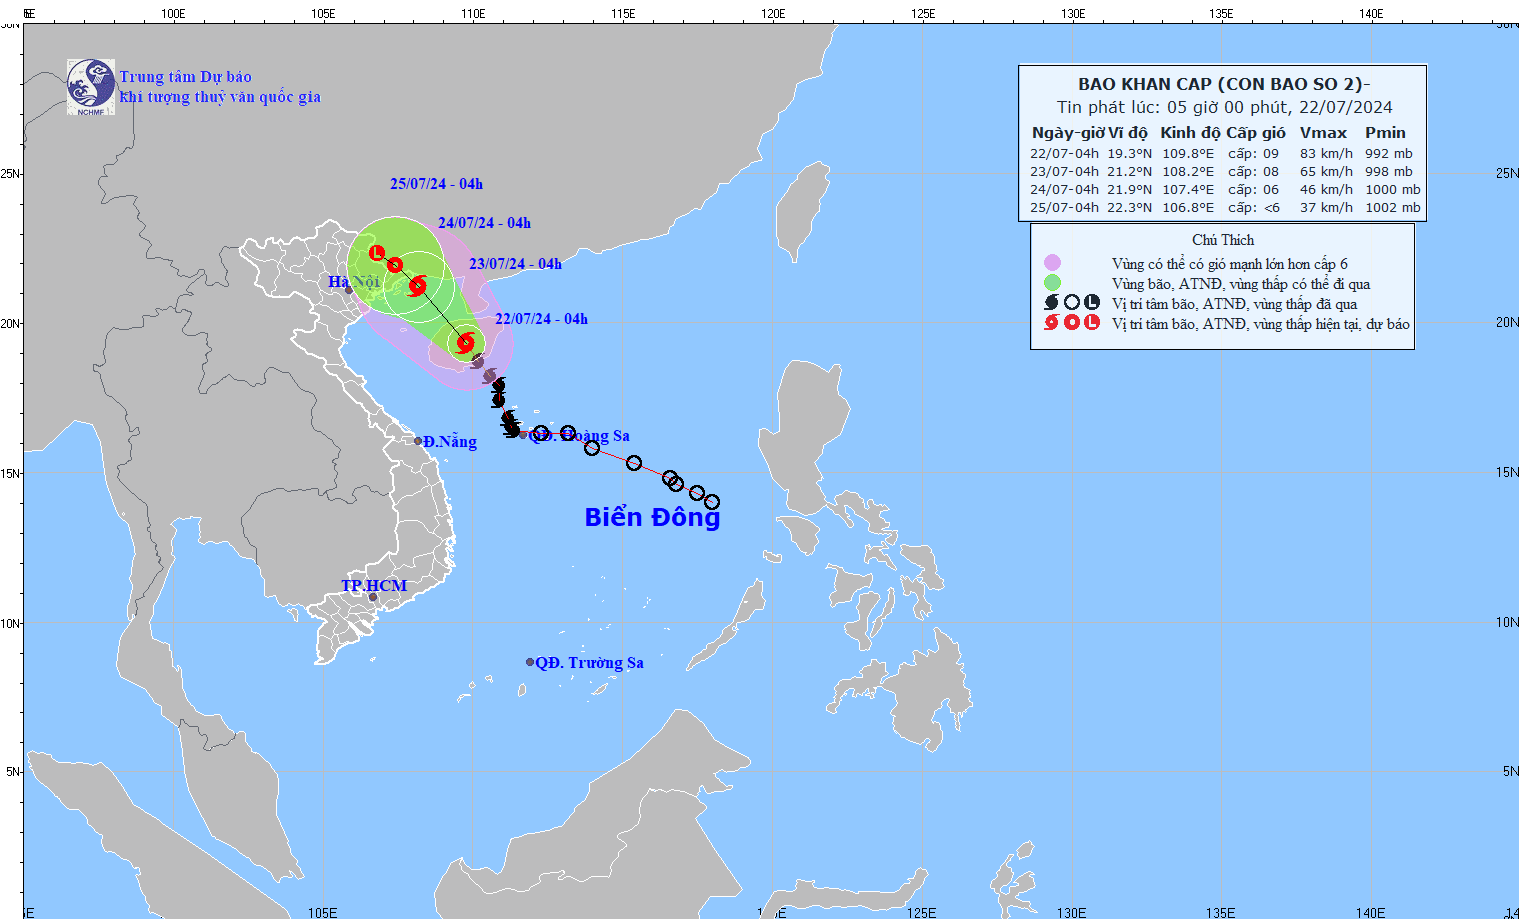 Dự báo ảnh hưởng bão số 2: Gió giật cấp 11; vùng ven biển tỉnh Quảng Ninh gió mạnh cấp 6, sóng cao 1,5-2,5m